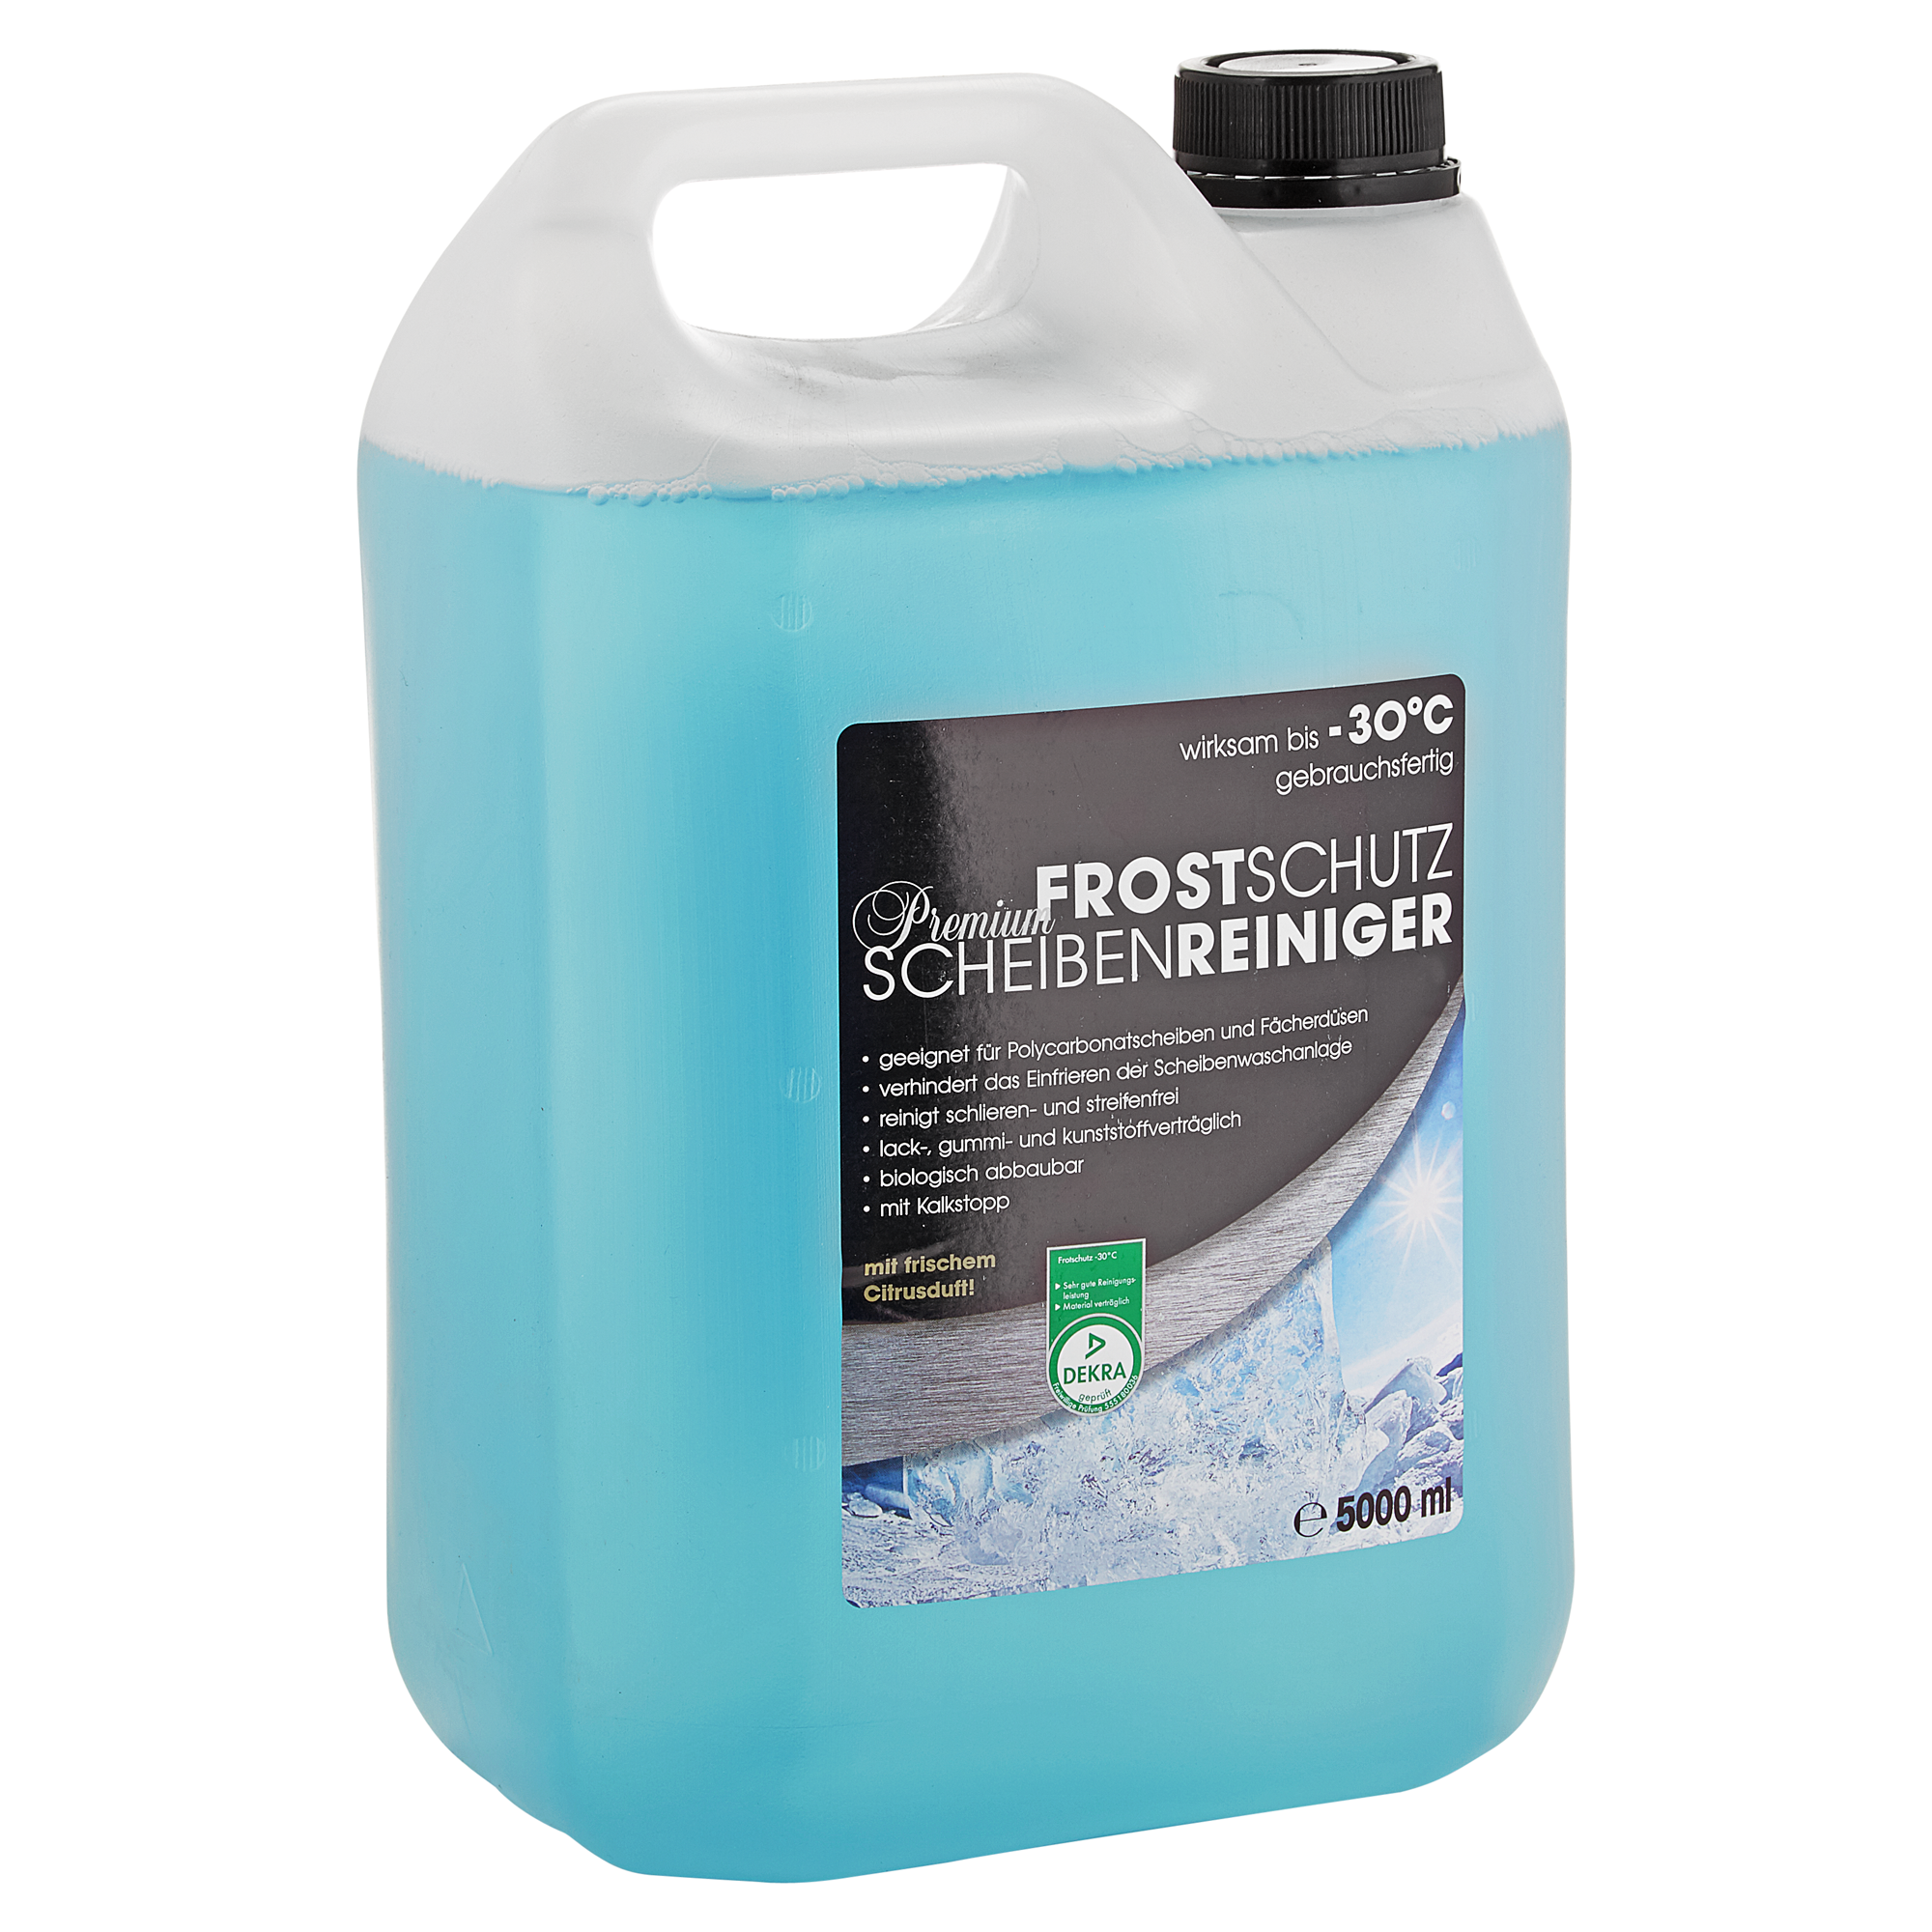 Frostschutz-Scheibenreiniger "Premium" 5 l + product picture